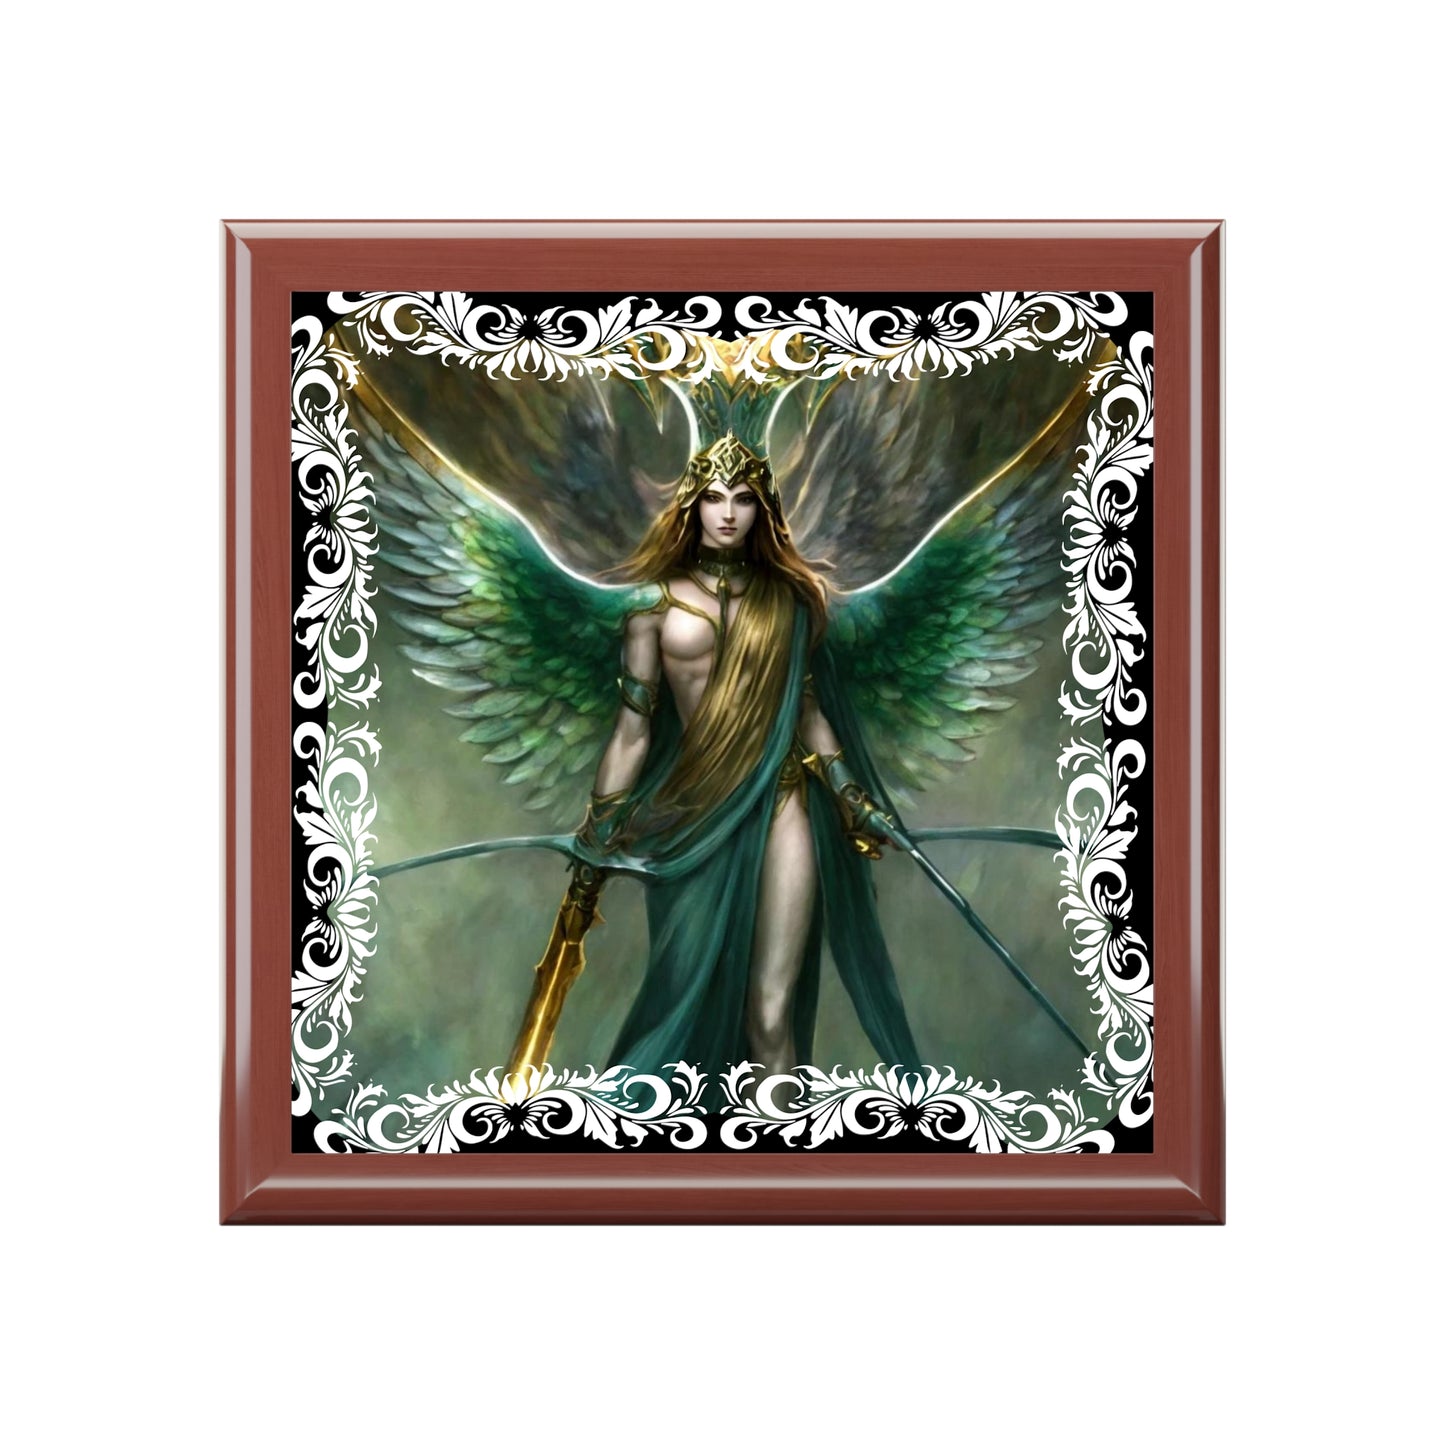 Portagioie angelico dell'Arcangelo Barachiel - Troni angelici: la tua porta d'accesso ai regni angelici